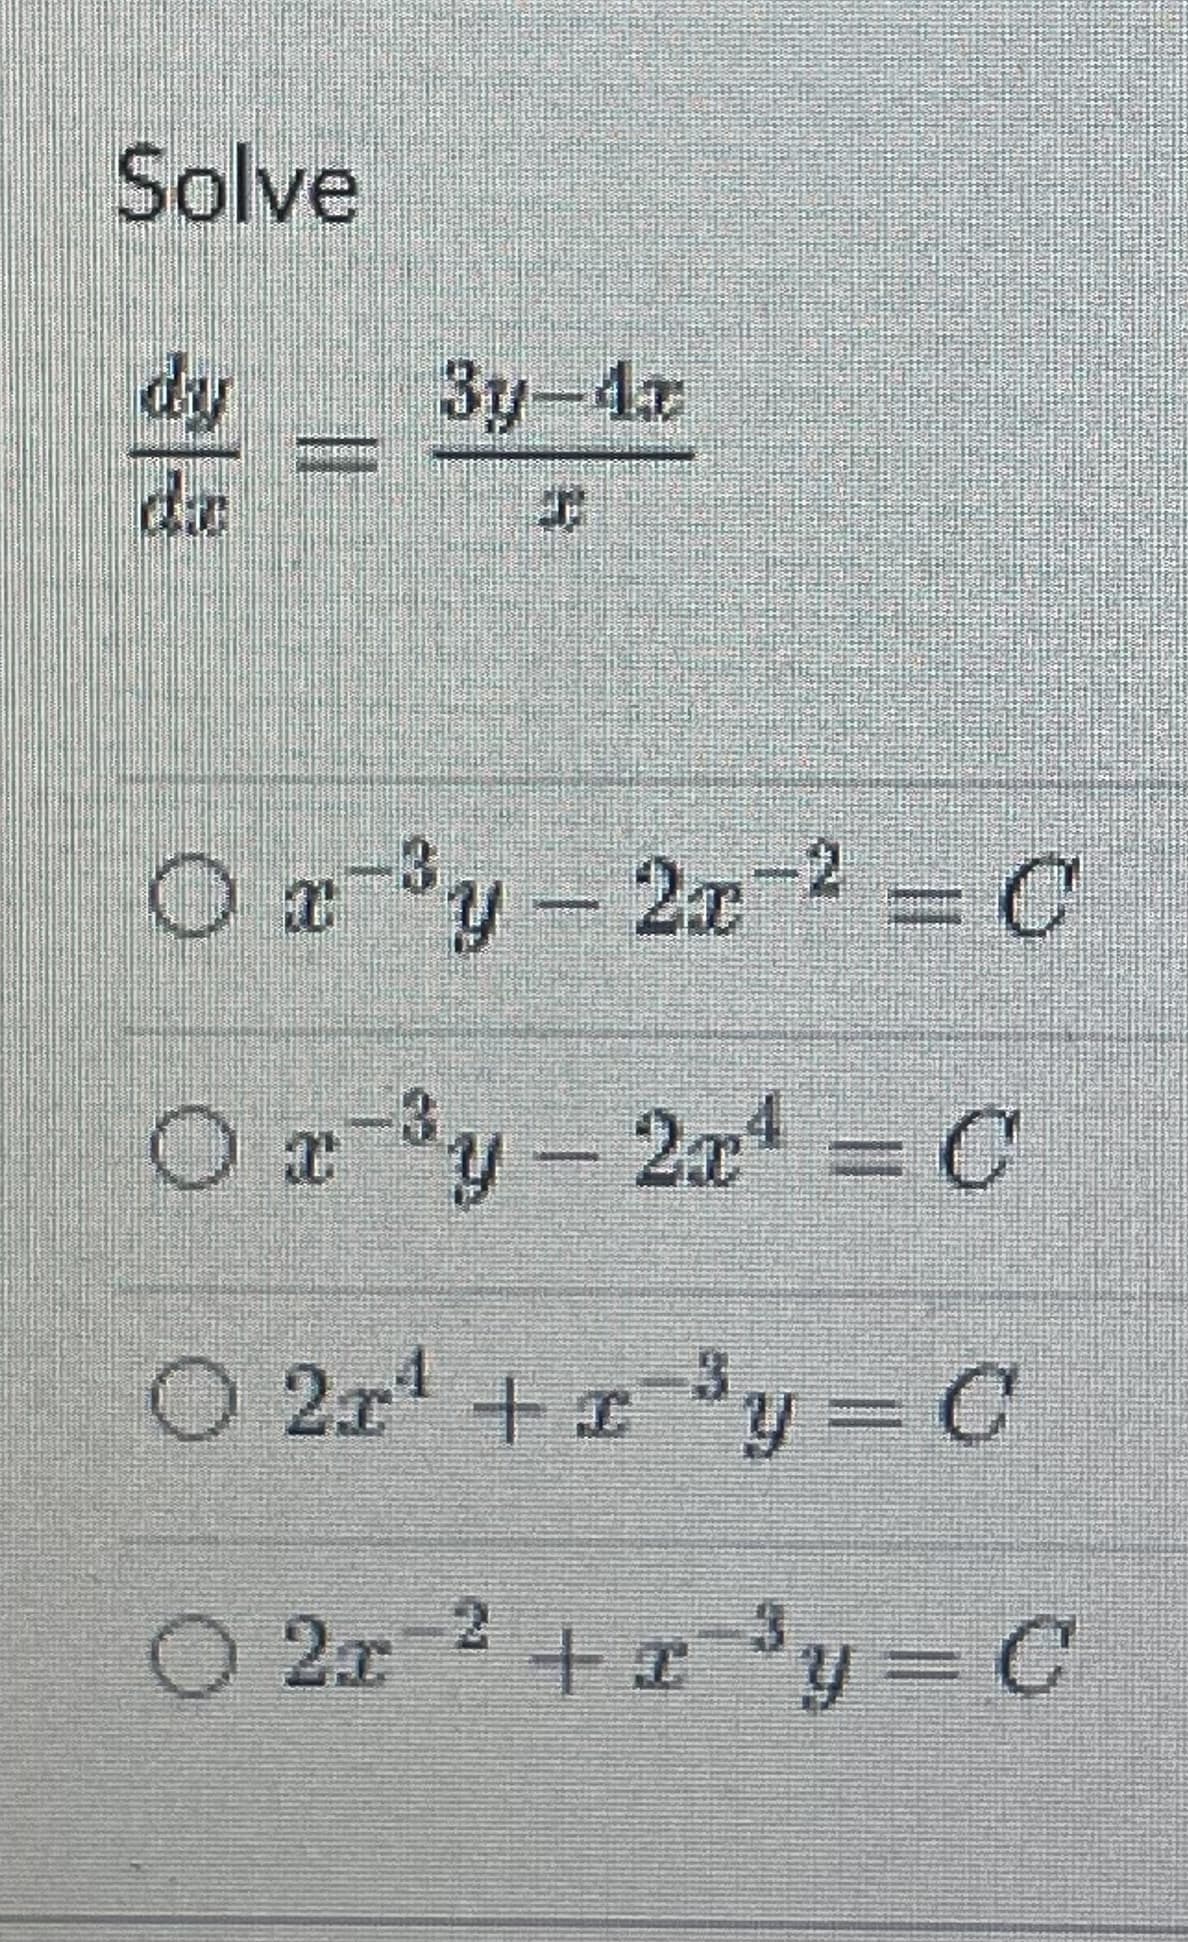 Solve
dy
||
3y-4x
EN
O x³y - 2x² = C
3
O x ³y - 2x¹ = C
O 21¹ + x³y = C
2
2r
2x ² + x³y = C